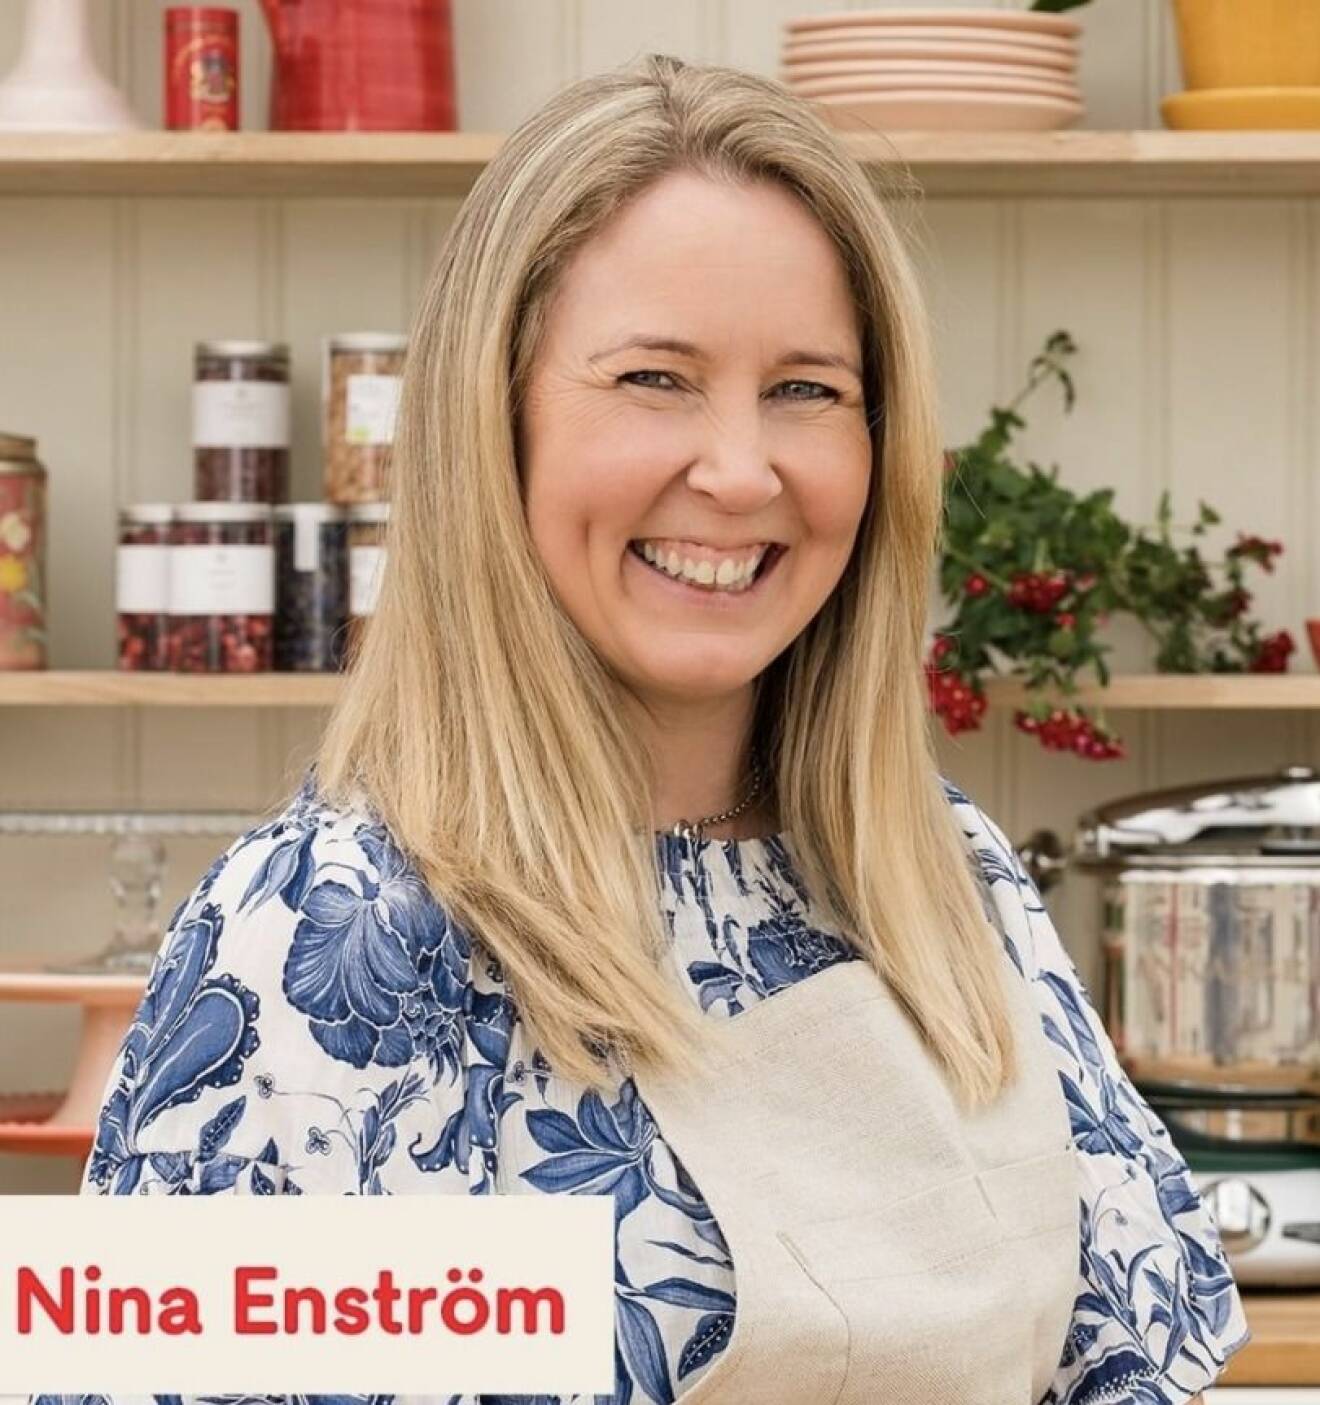 Nina Enström